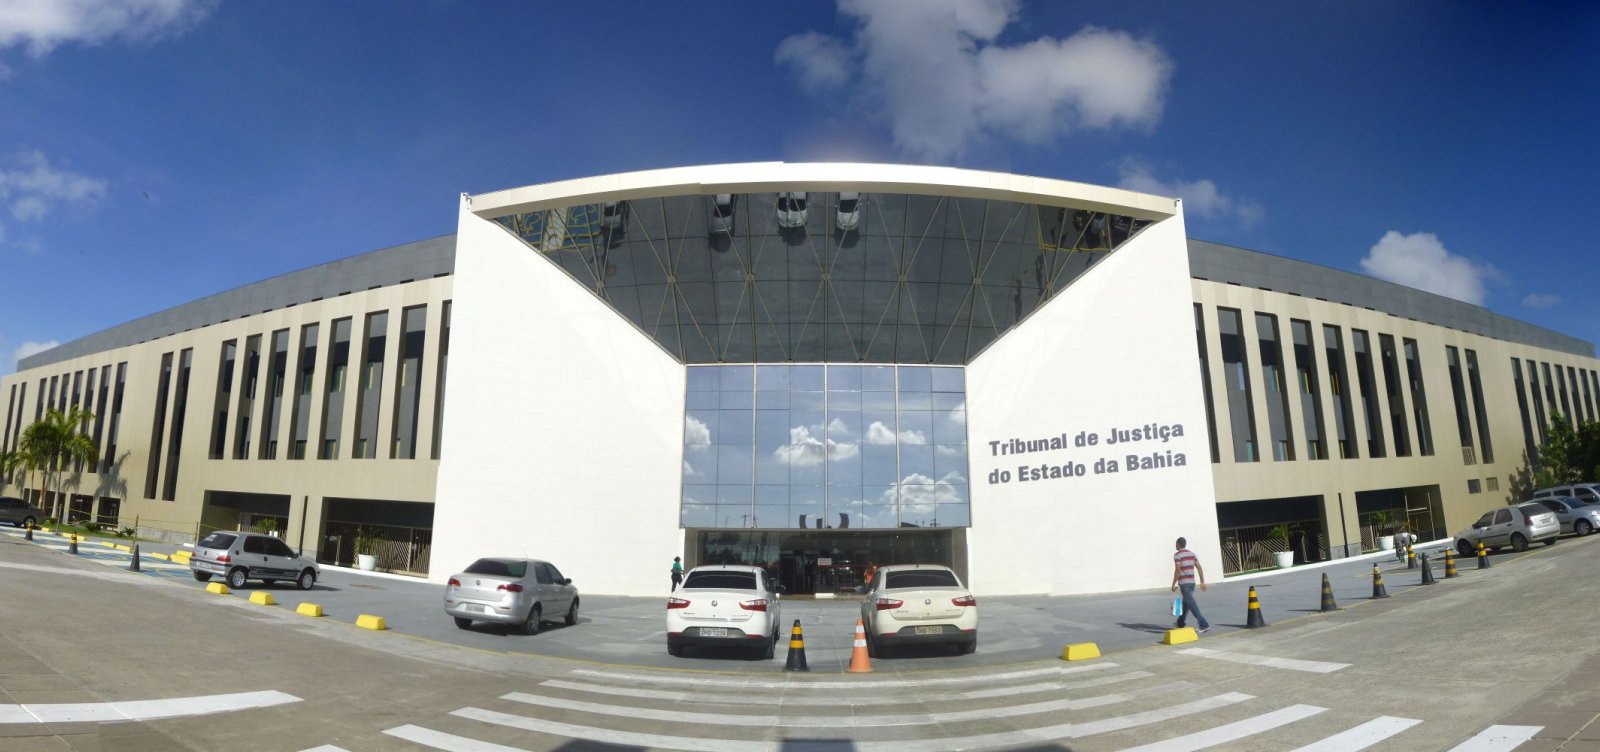 Operação Faroeste: em grampo, presidente do TJ relata 'rachadinha' em gabinete de colega